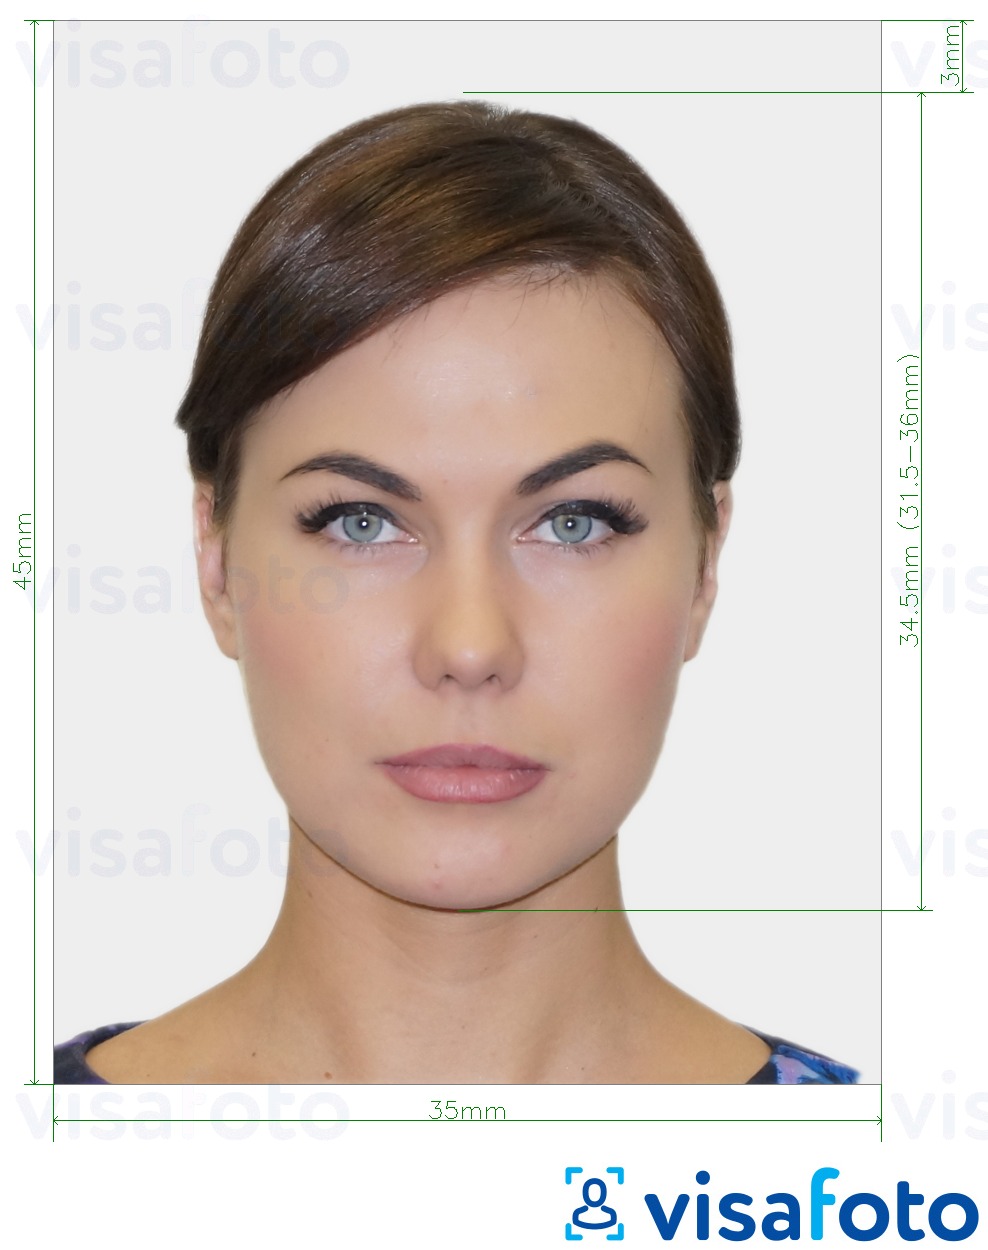 Contoh dari foto untuk Paspor Kroasia 35x45 mm (3,5x4,5 cm) dengan ukuran spesifikasi yang tepat